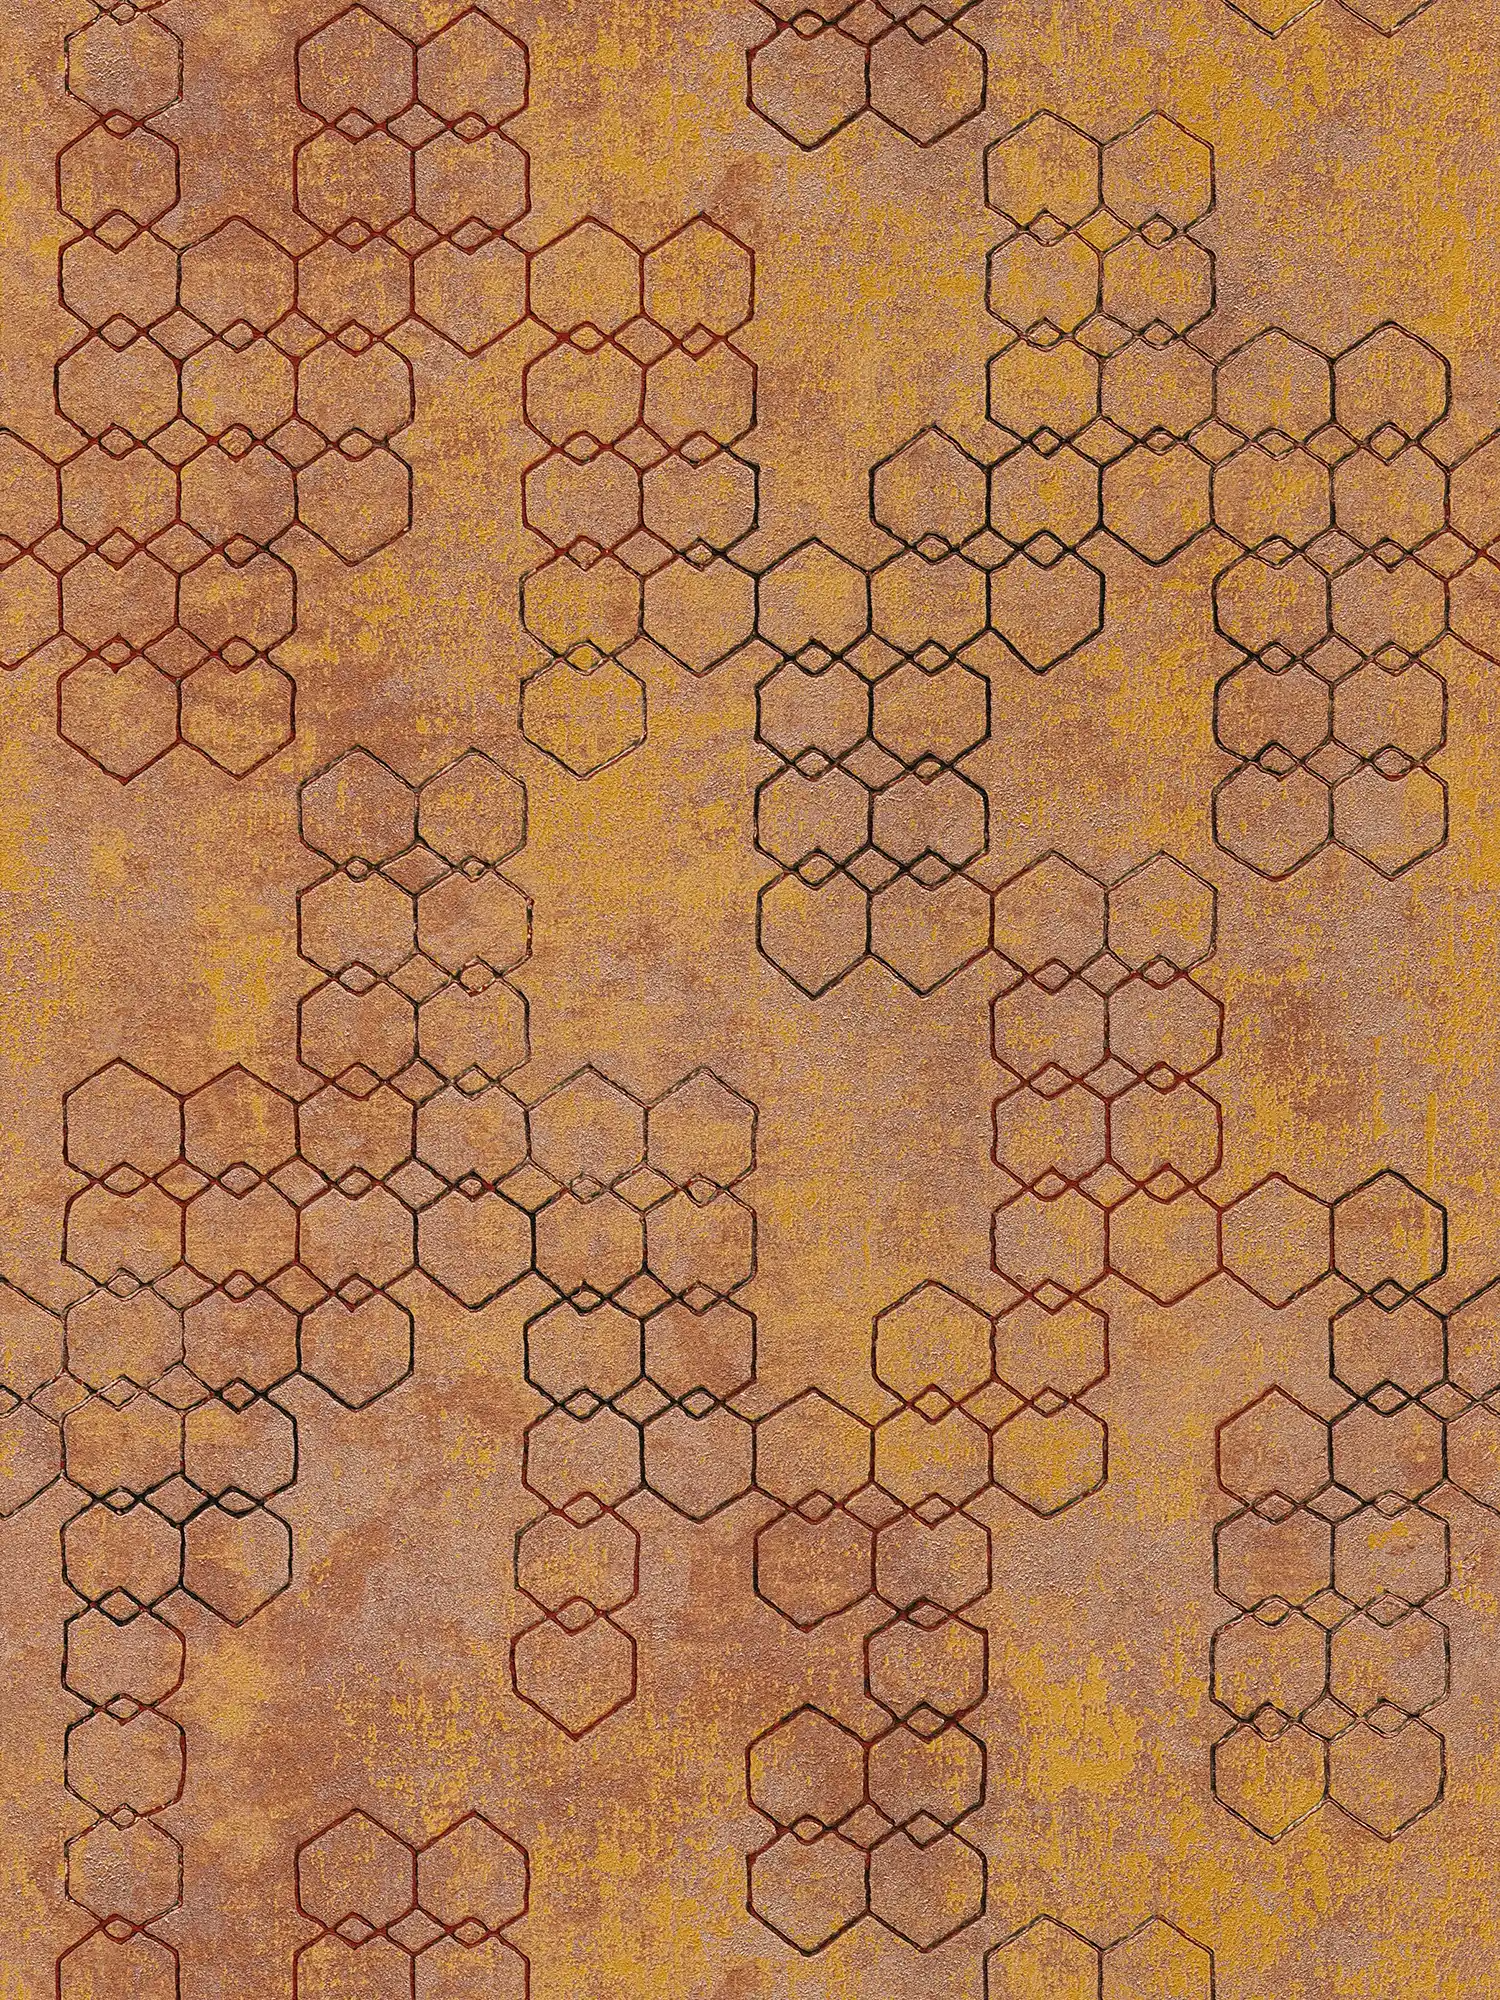 Papel pintado con motivos geométricos de estilo industrial - naranja, dorado, marrón
